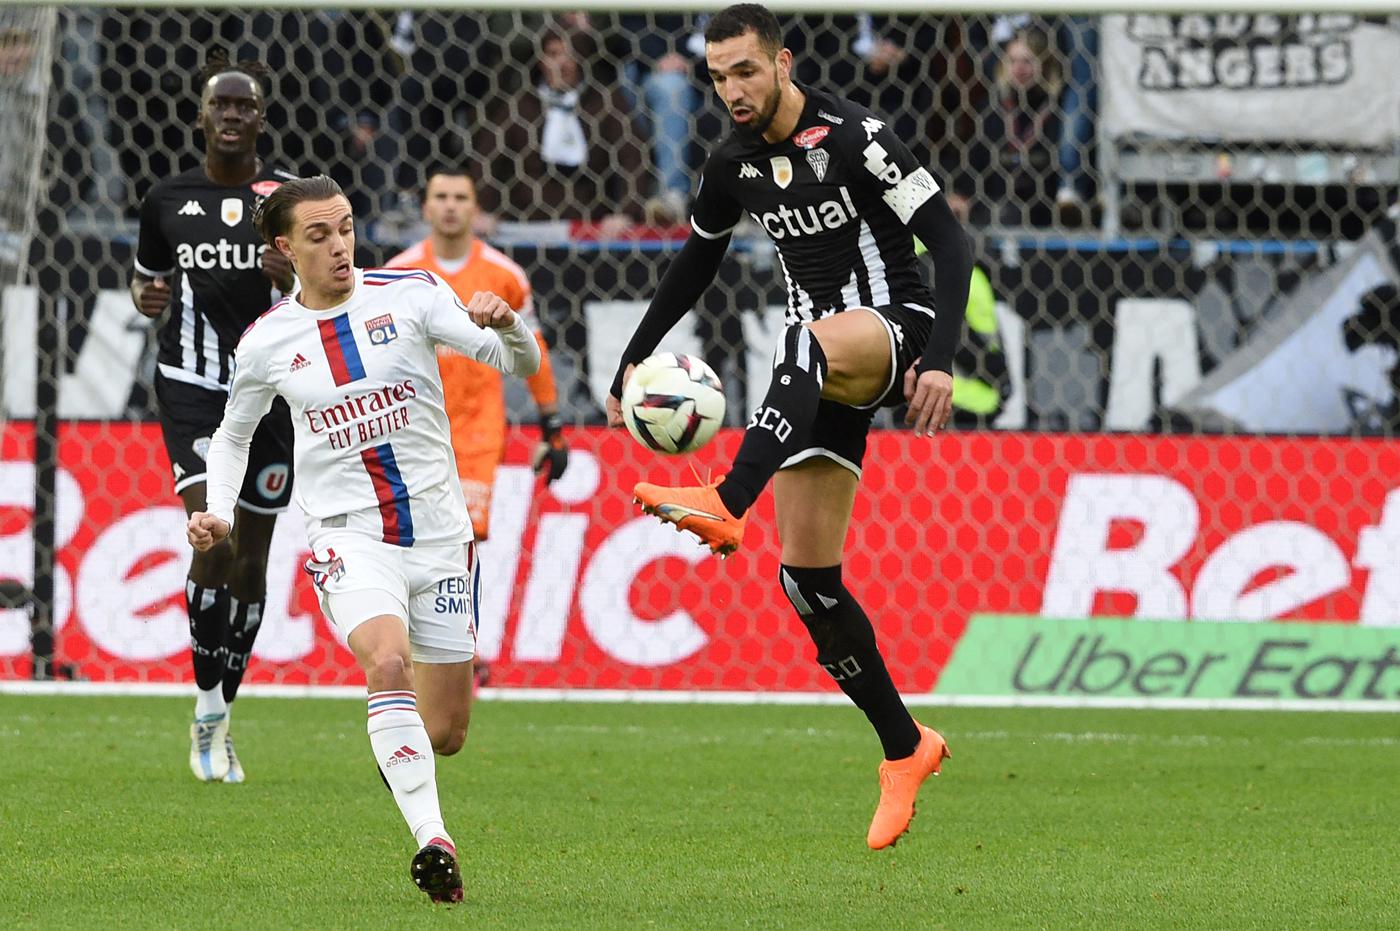 Angers v Lyon - 1:3. Mistrzostwa Francji, runda 25. Przegląd meczu, statystyki.